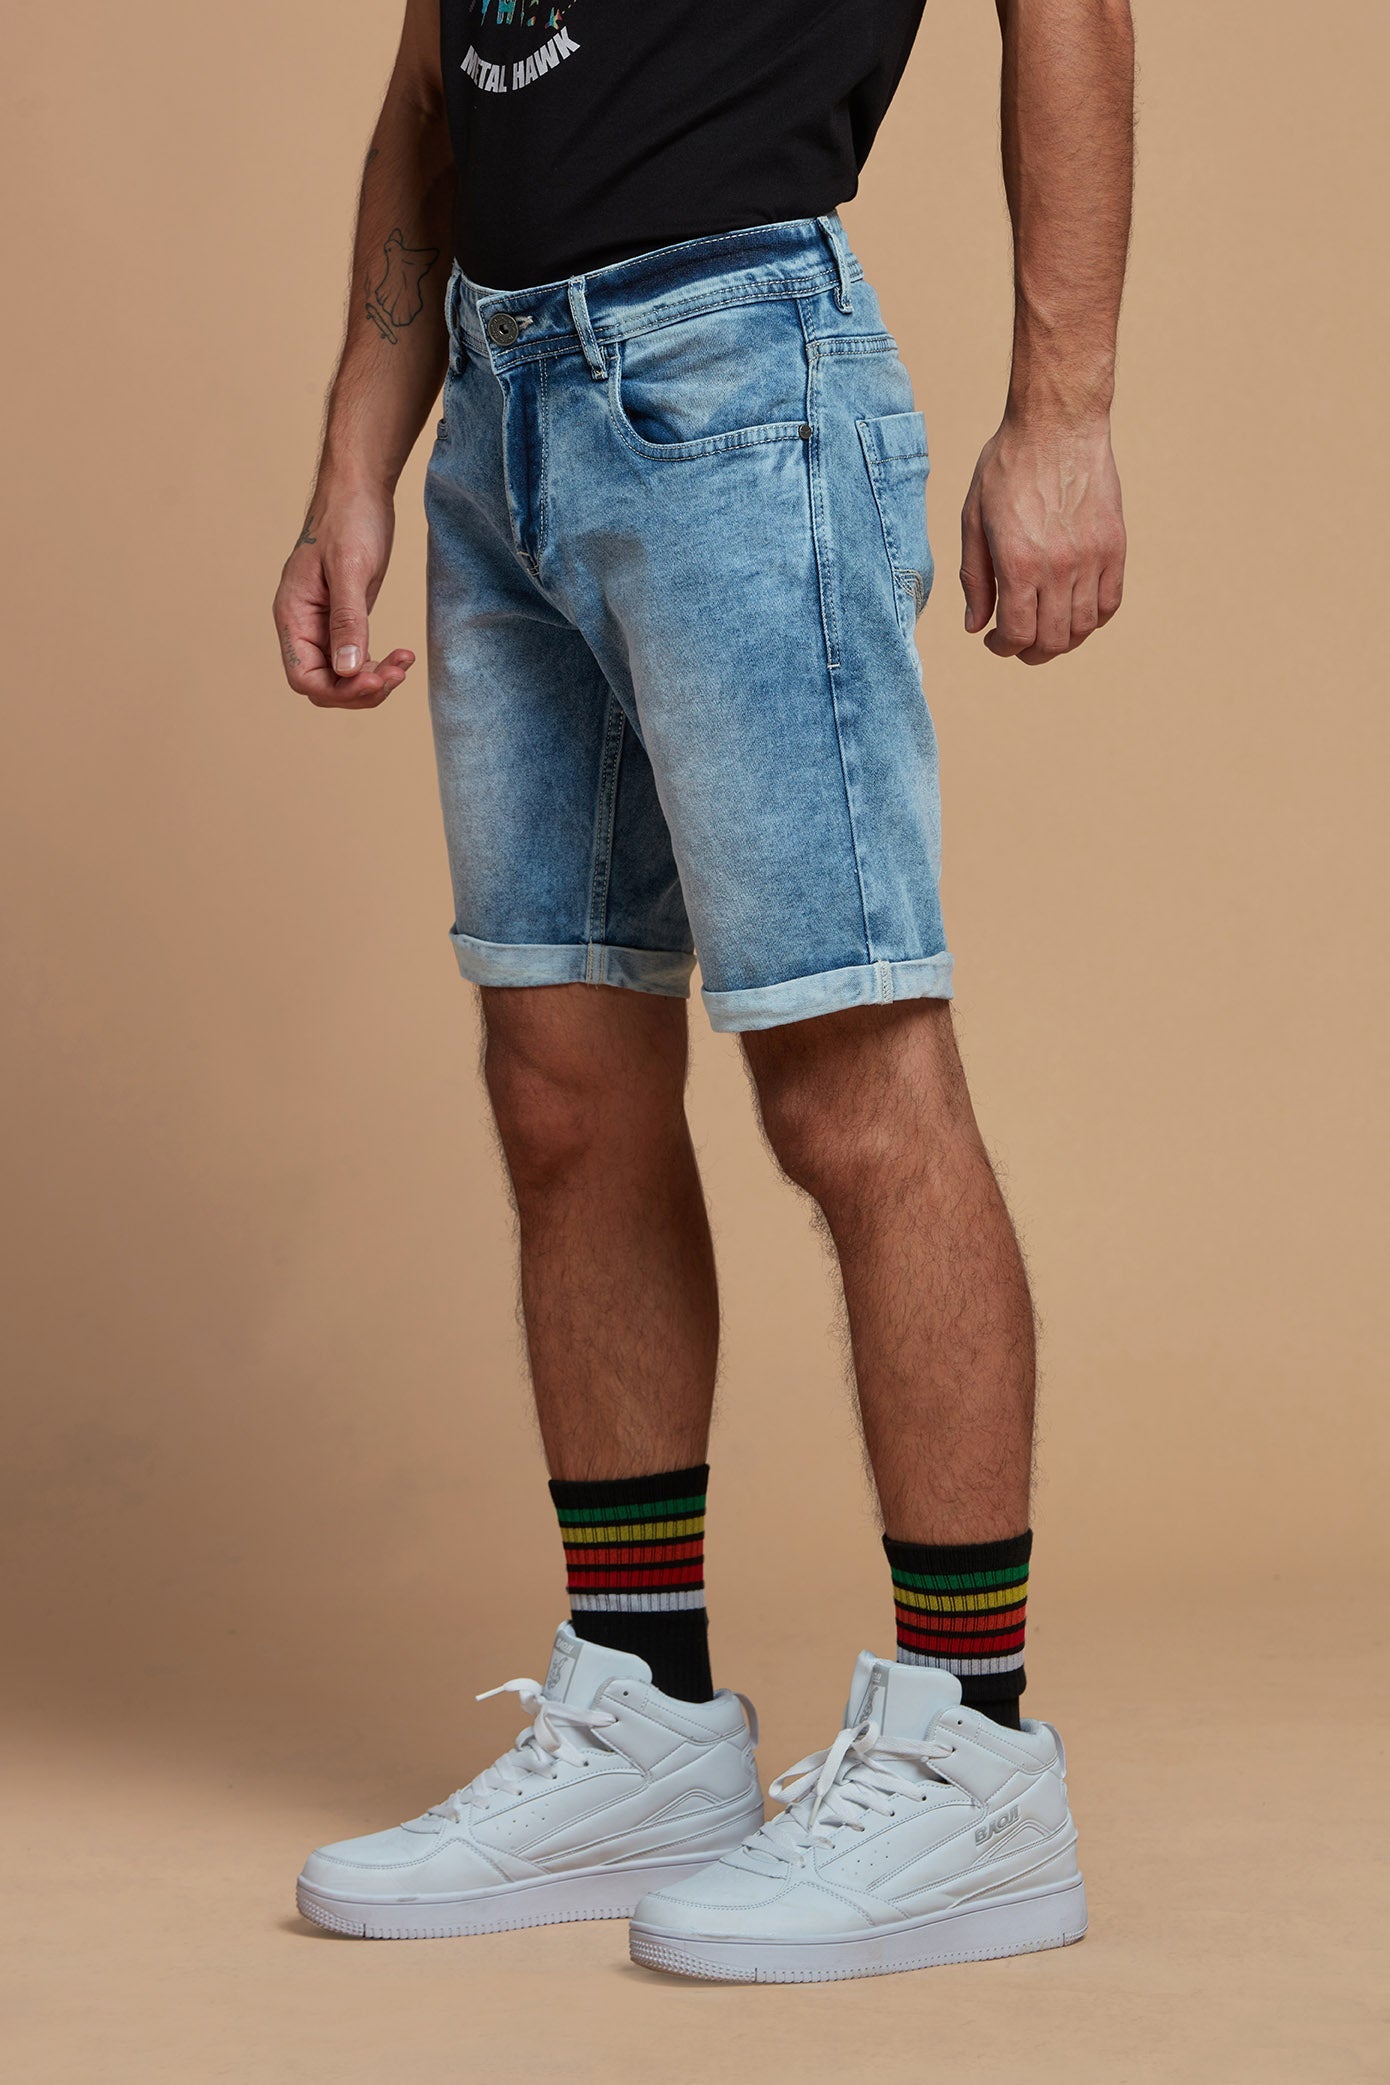 ZLZ Short Jeans for Men Slim Fit, Men's Fashion Design Stretch Slim Black Denim  Shorts Pants with Holes, Size 28 at Amazon Men's Clothing store